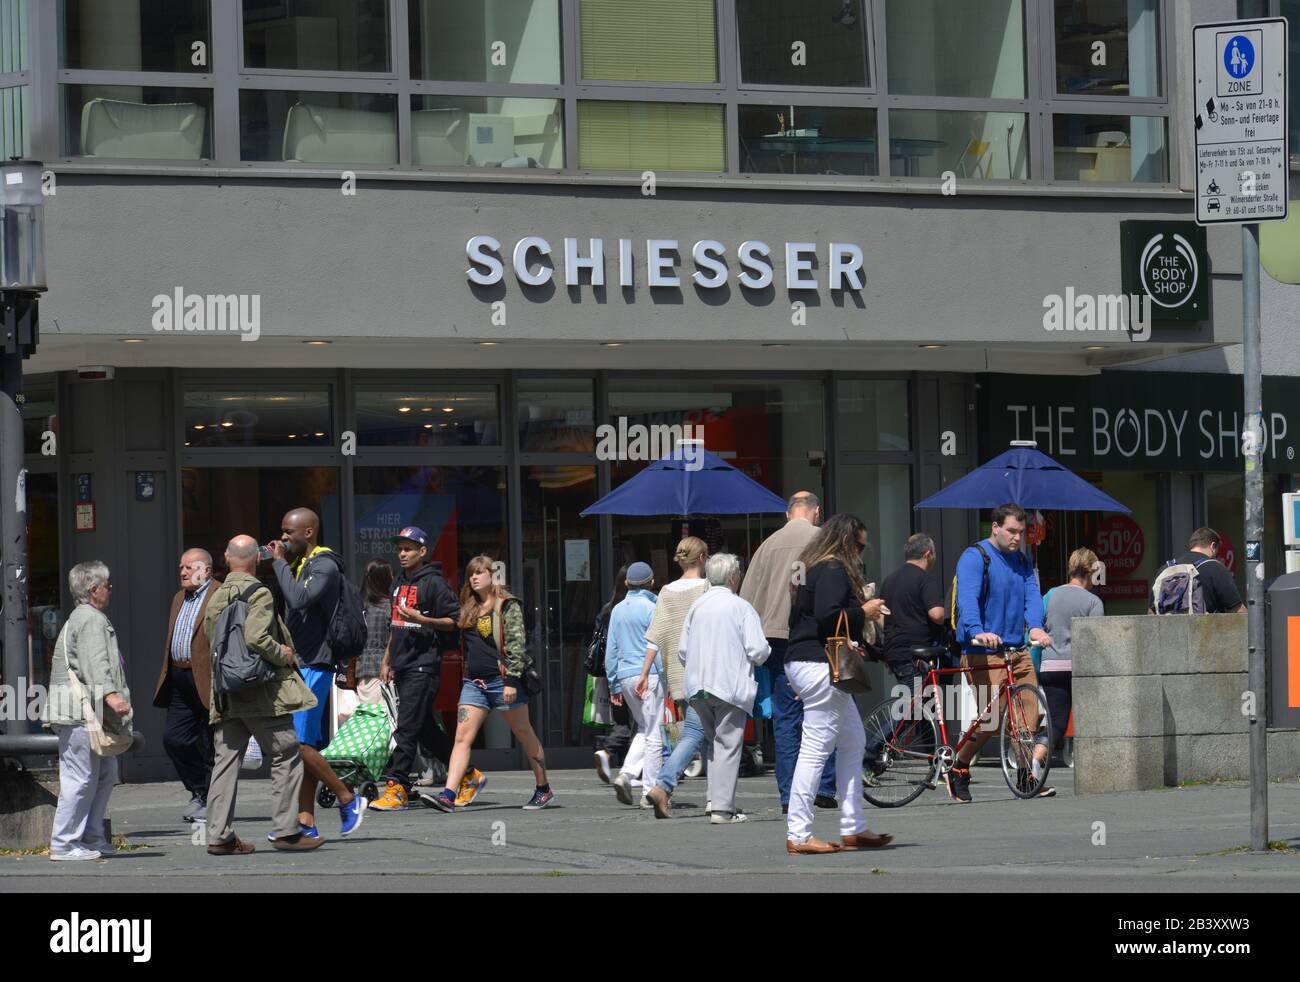 Schiesser, Wilmersdorfer Strasse, Charlottenburg, Berlin, Deutschland Stock  Photo - Alamy